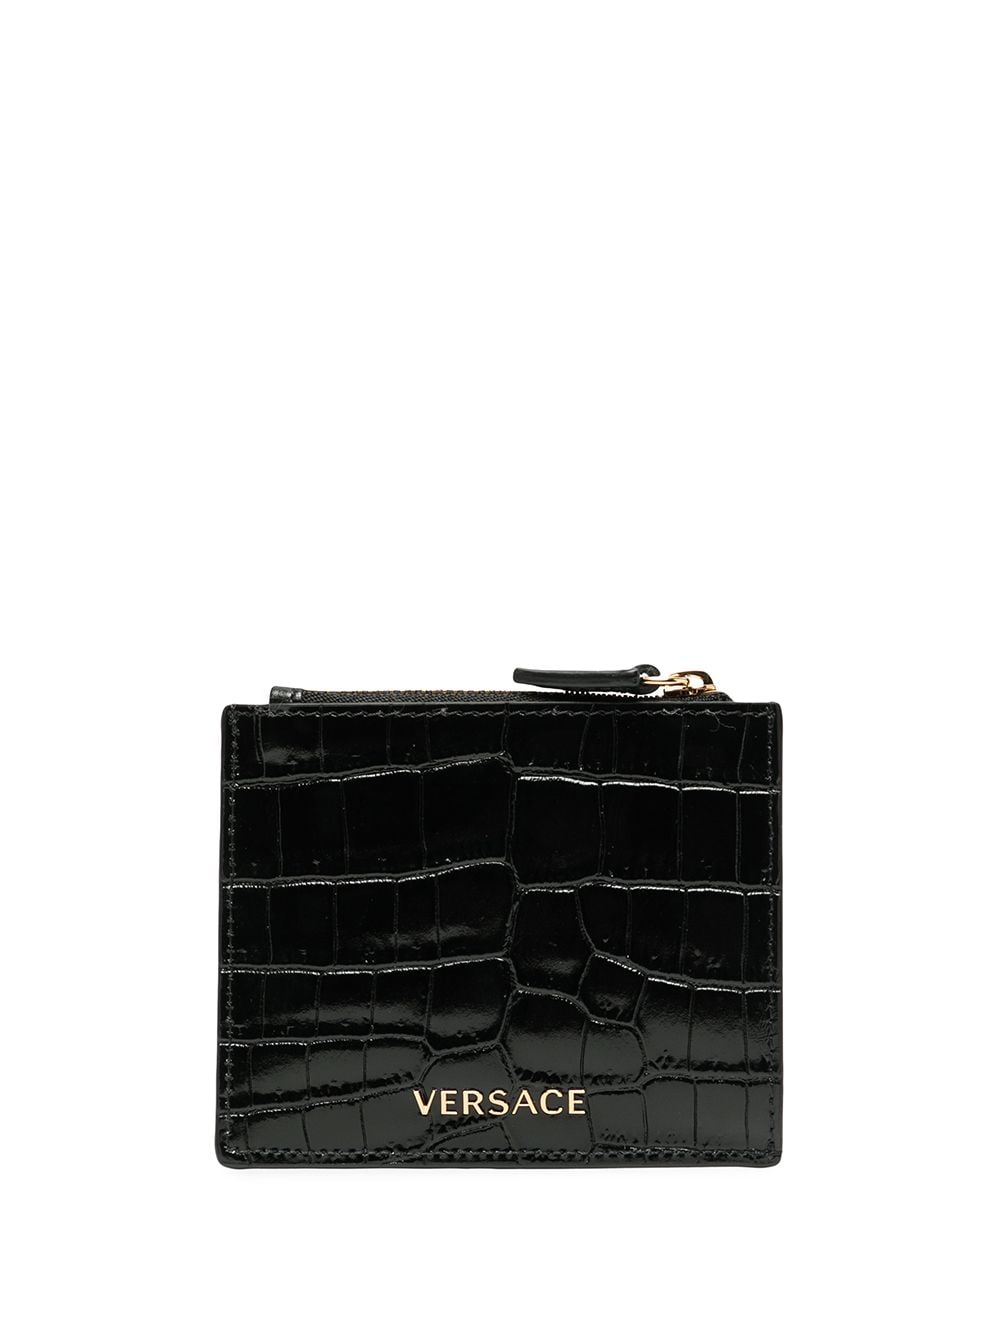 фото Versace кошелек с тиснением под кожу крокодила